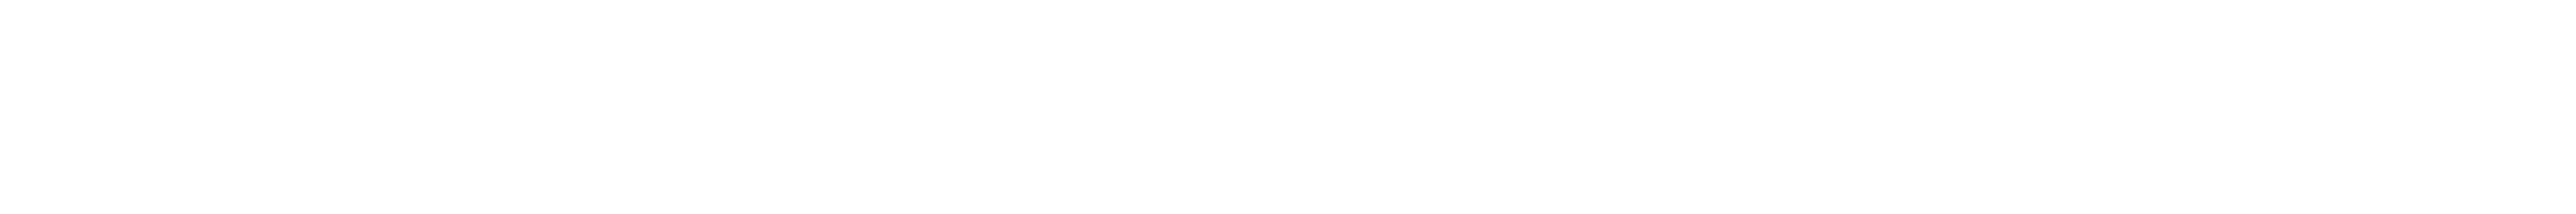 Orium and Commercetools Logos